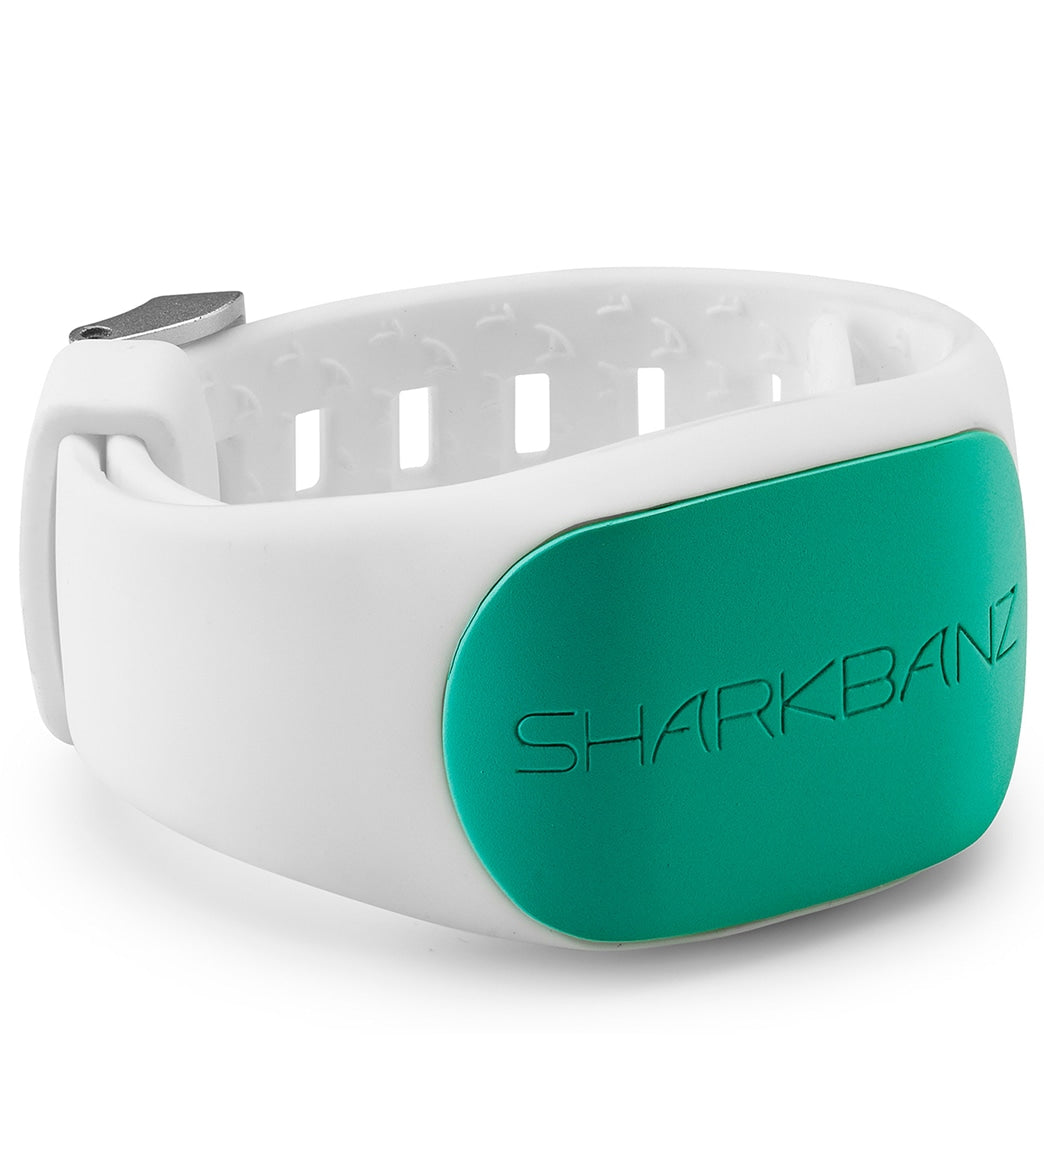 Sharkbanz 2 Shark Deterrent Band - White/Seafoam - Swimoutlet.com